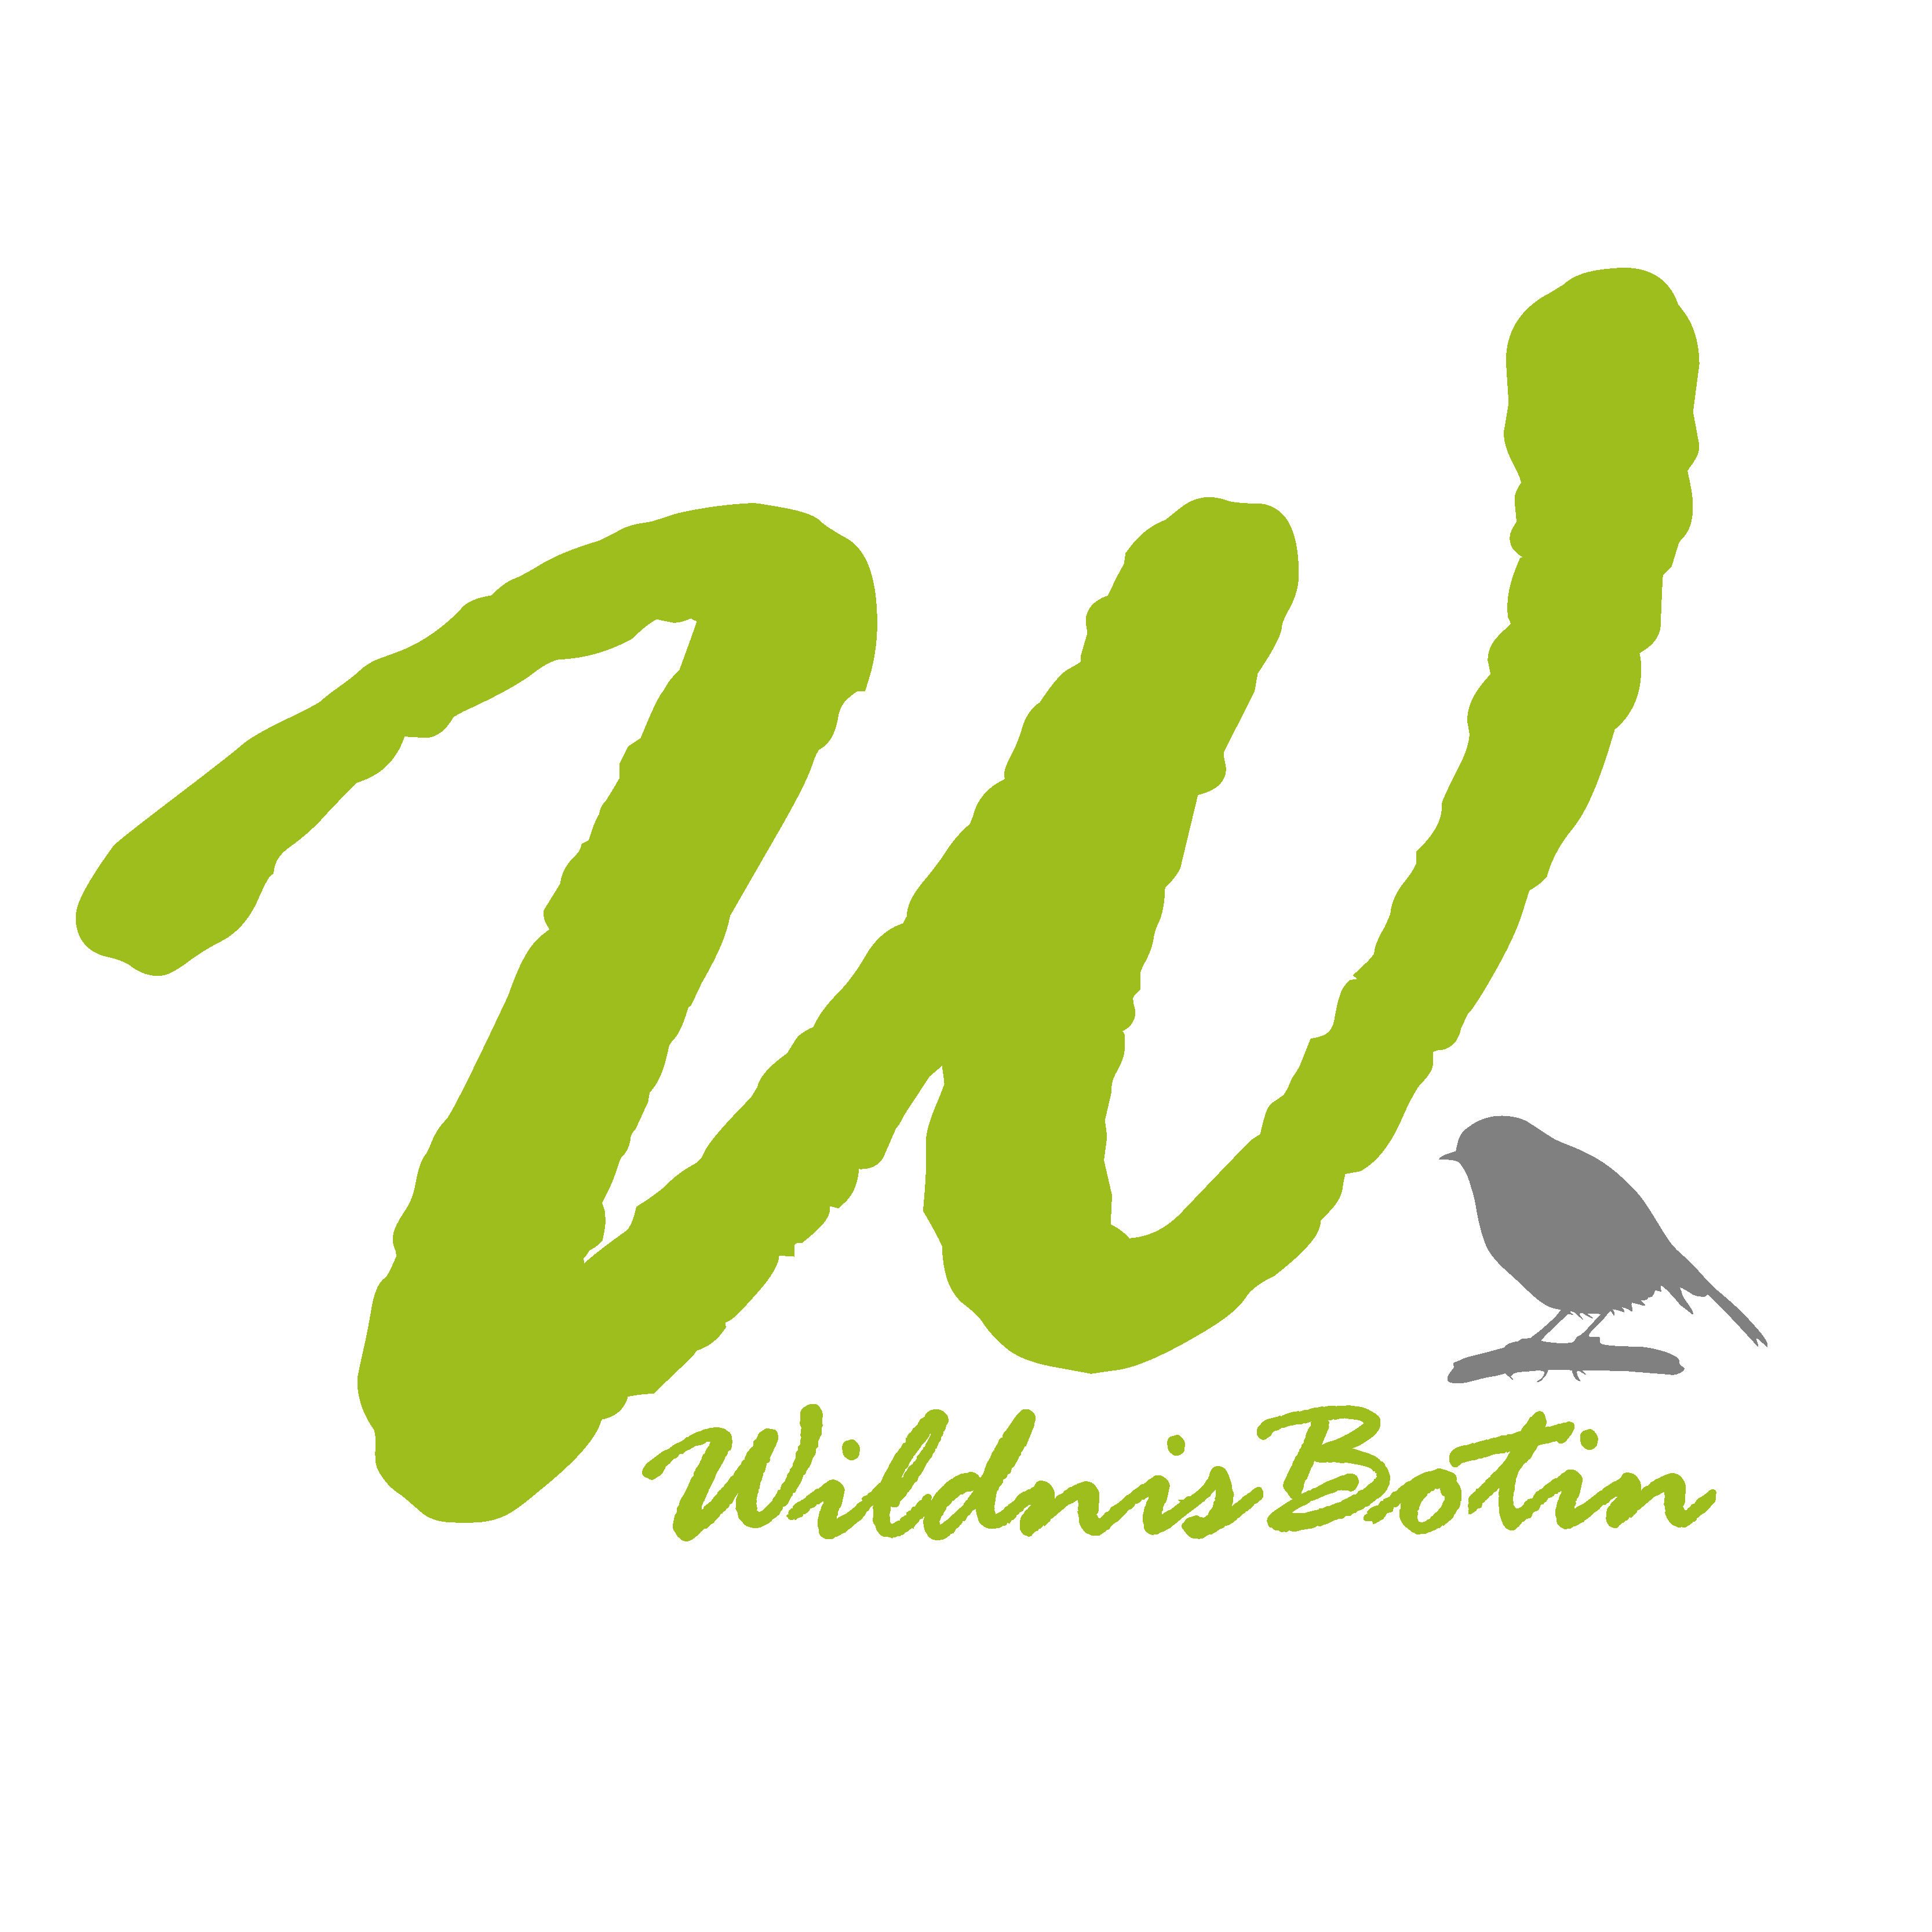 Grosses grünes W mit Fusszeile WildnisBotin.de und kleiner Vogelsilhoutte unten rechts